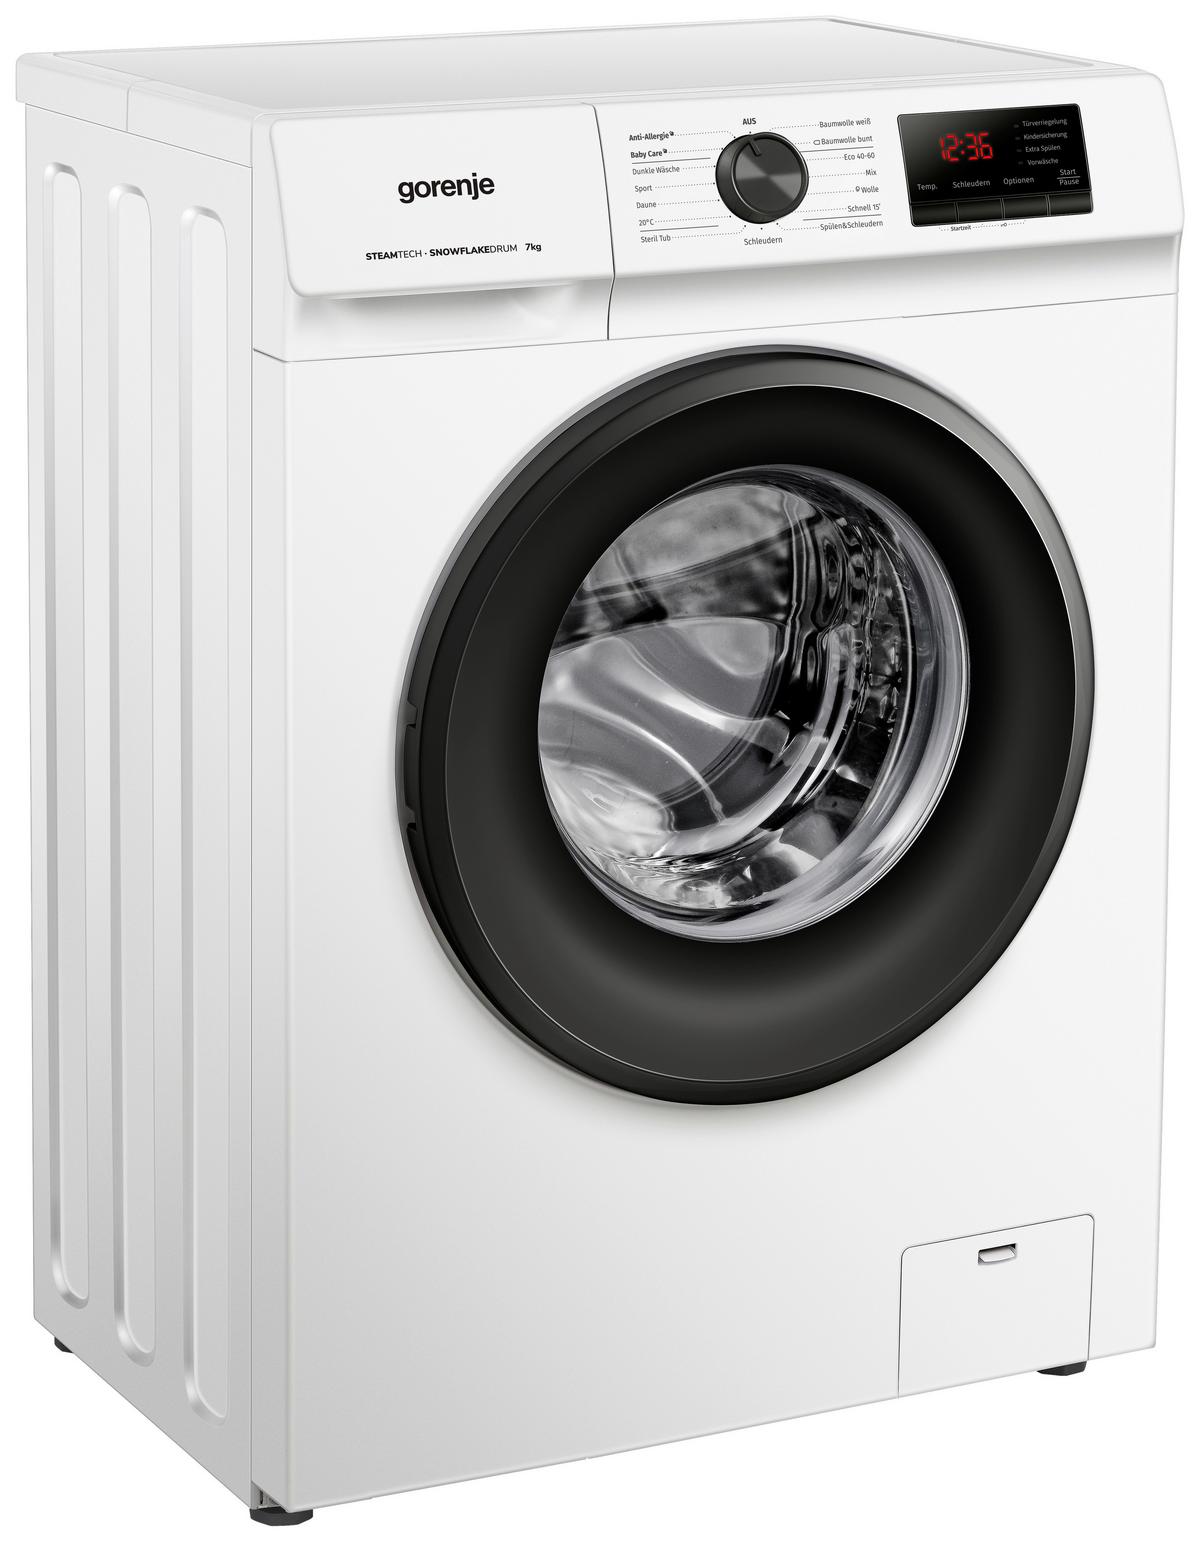 WNHVB72SDPS/AT » Waschmaschine kaufen online